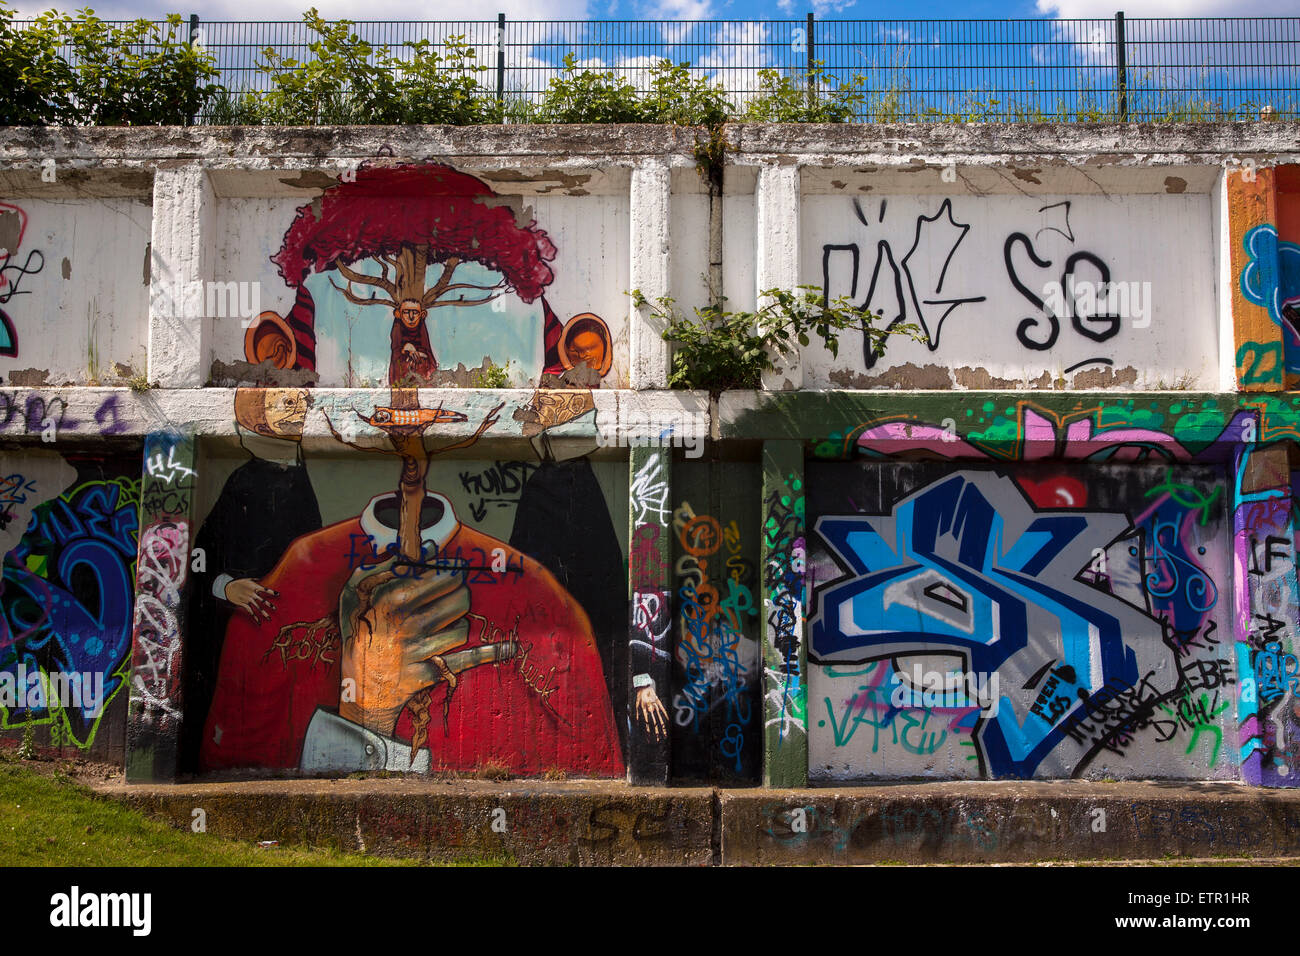 Europa, Deutschland, Nordrhein-Westfalen, Ruhrgebiet, Gelsenkirchen, Hall of Fame, Graffitis an einer 400 m langen Mauer des ehe Stock Photo